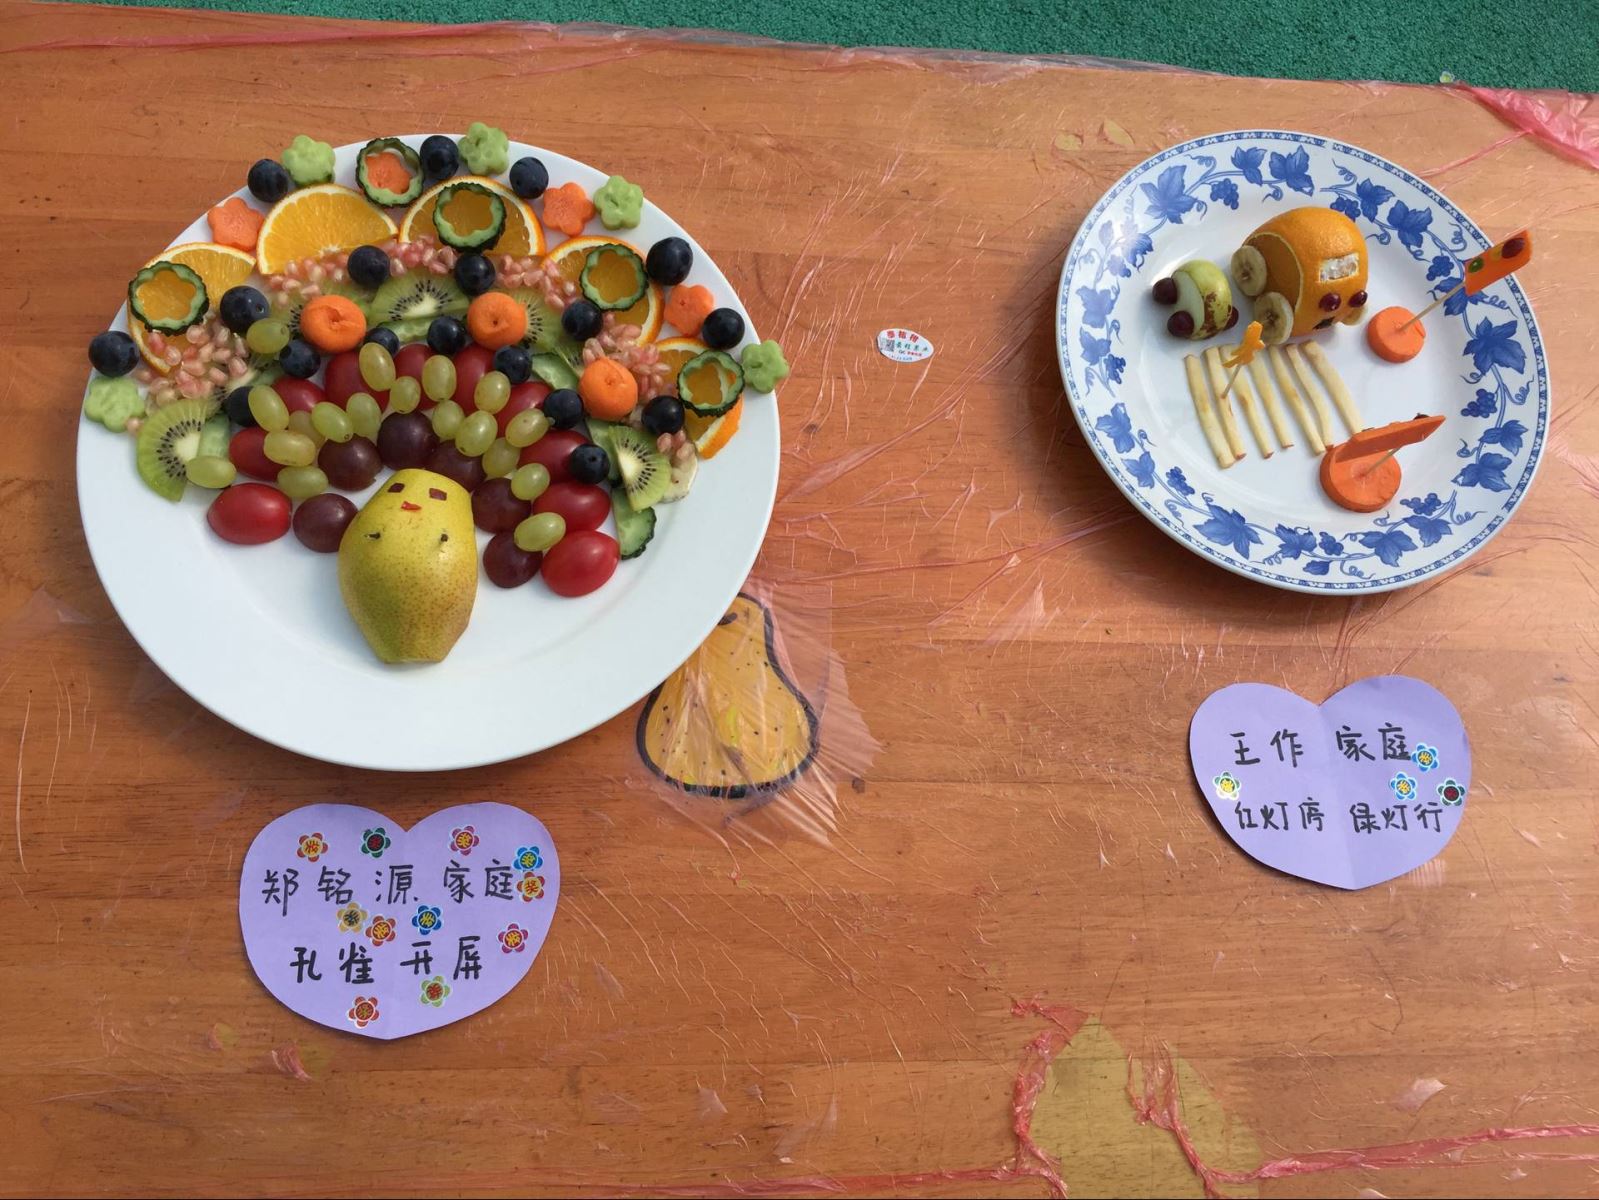 “创意水果拼盘，浓浓亲子情 ——城东实验园区小班段水果拼盘亲子活动